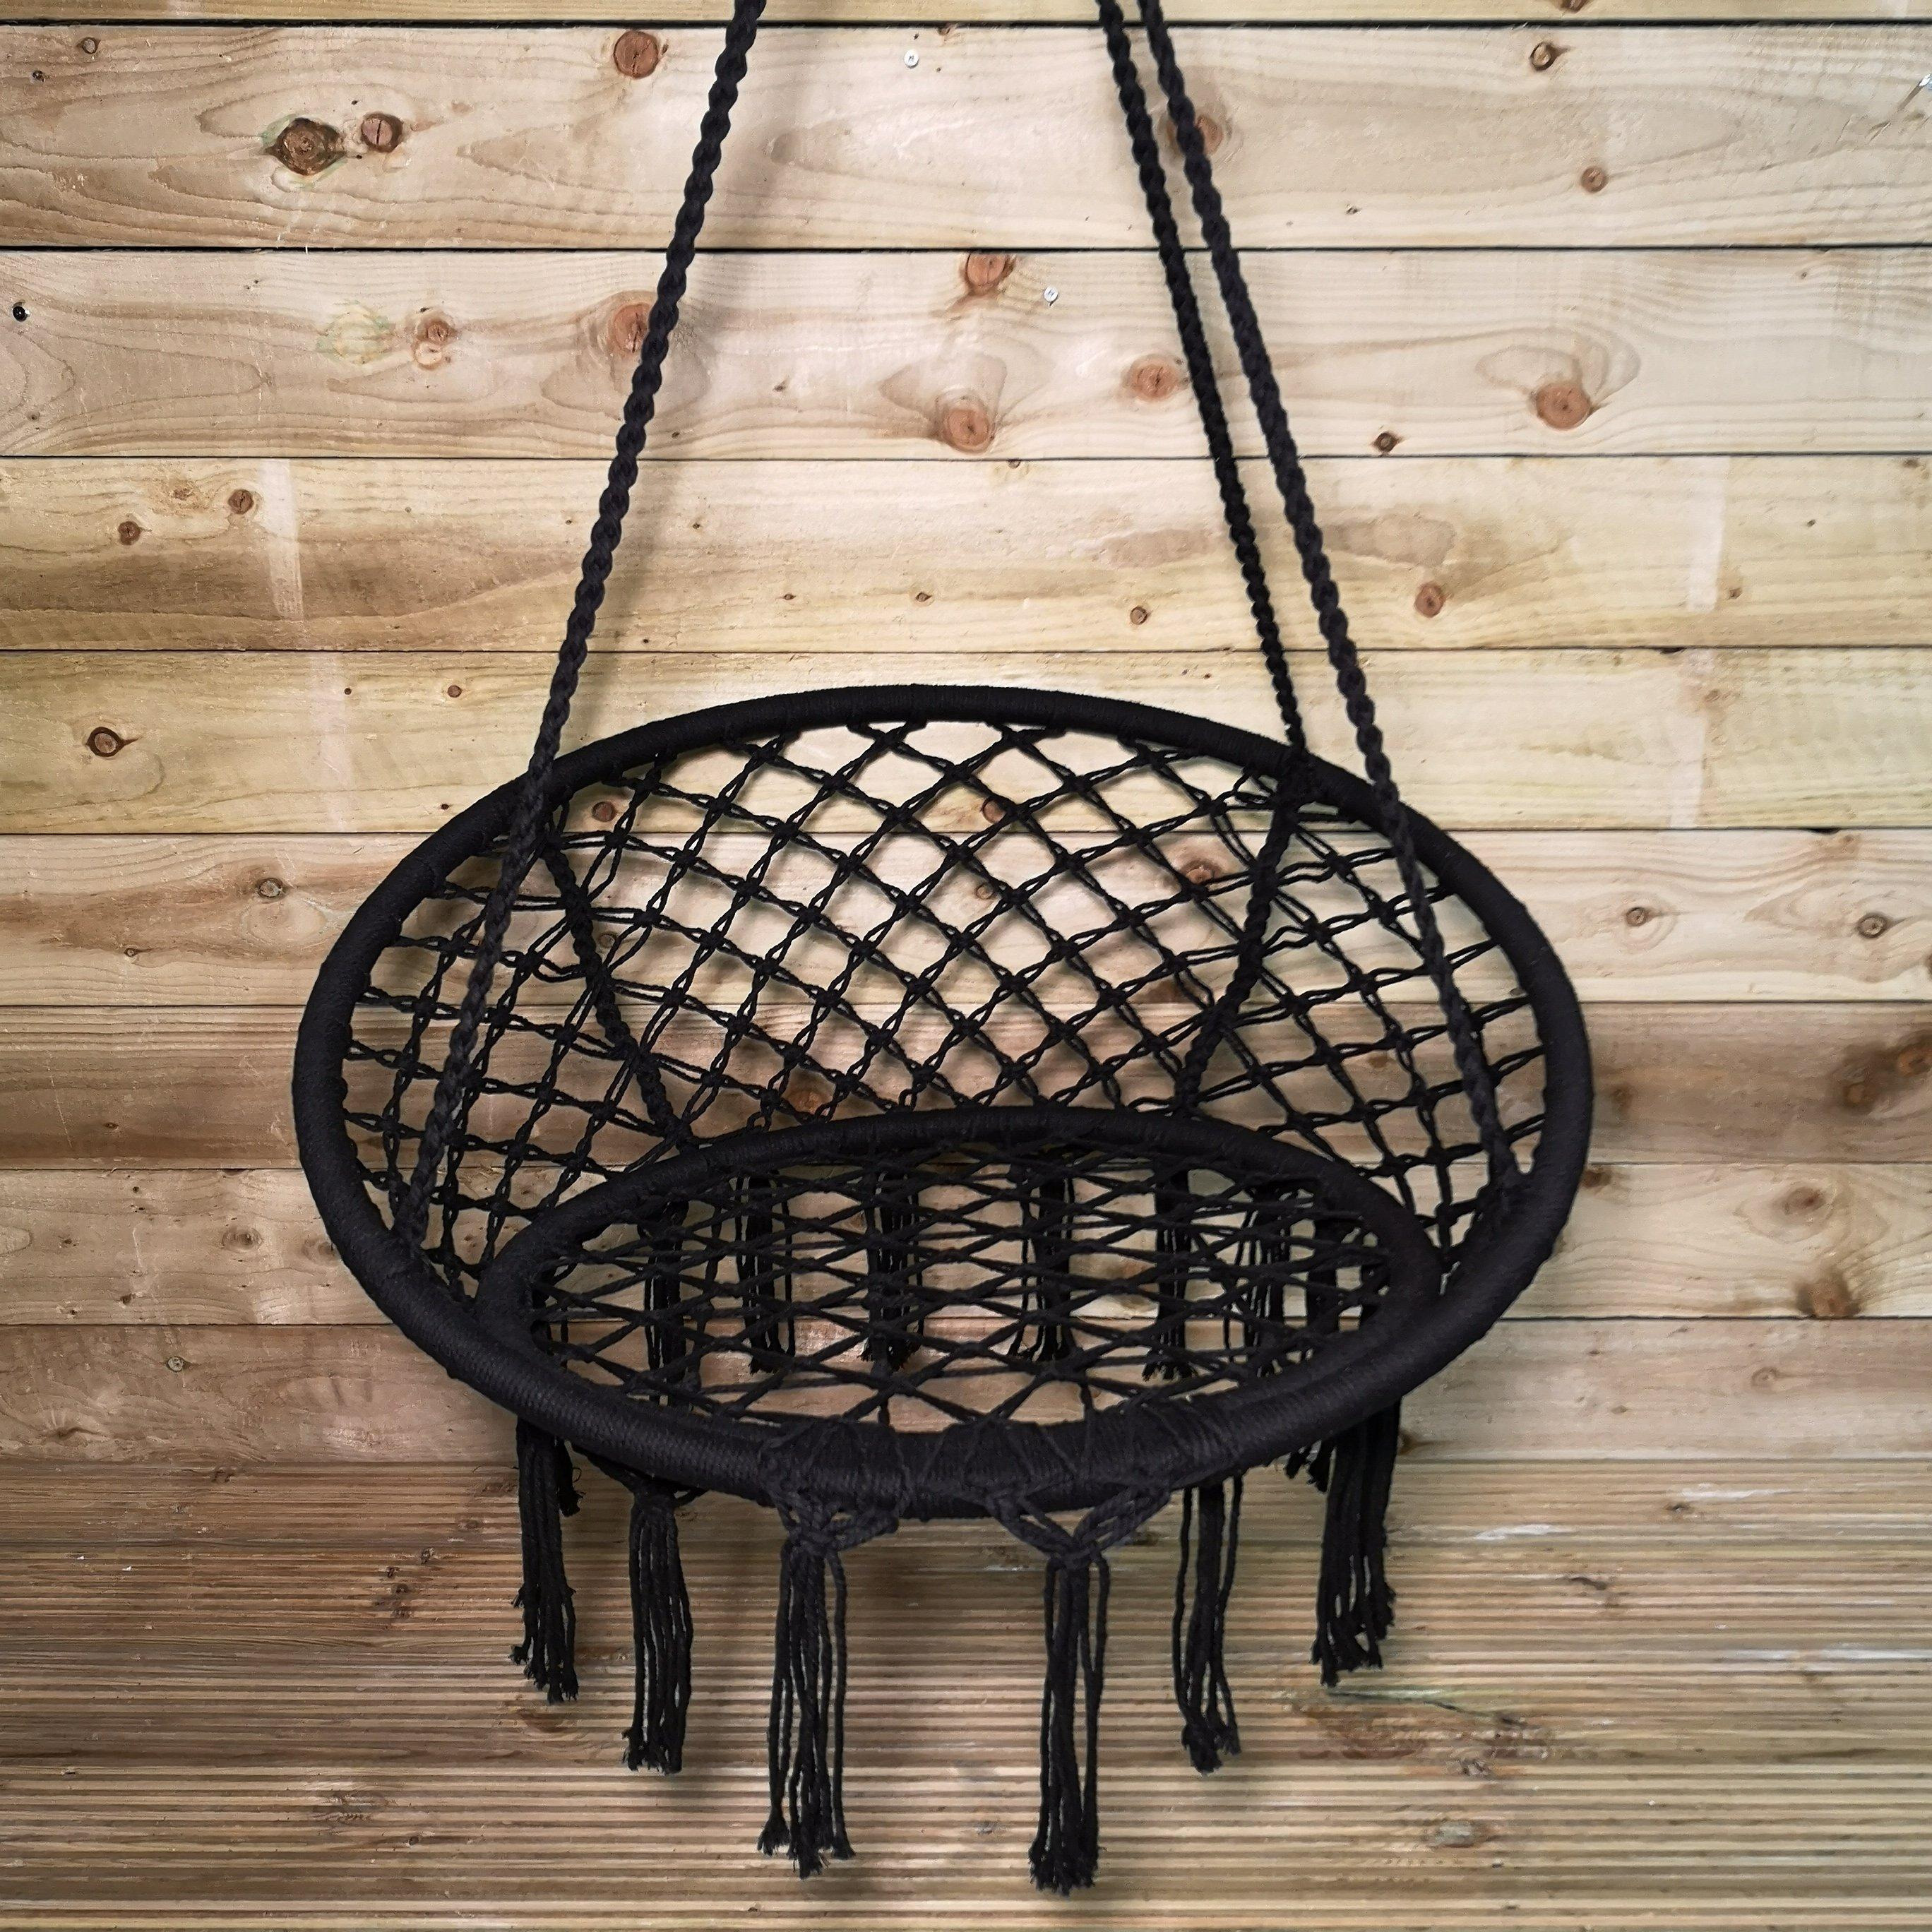 80cm Hanging Black Macrame Chair Indoor Outdoor Swing Chair Hammock - image 1